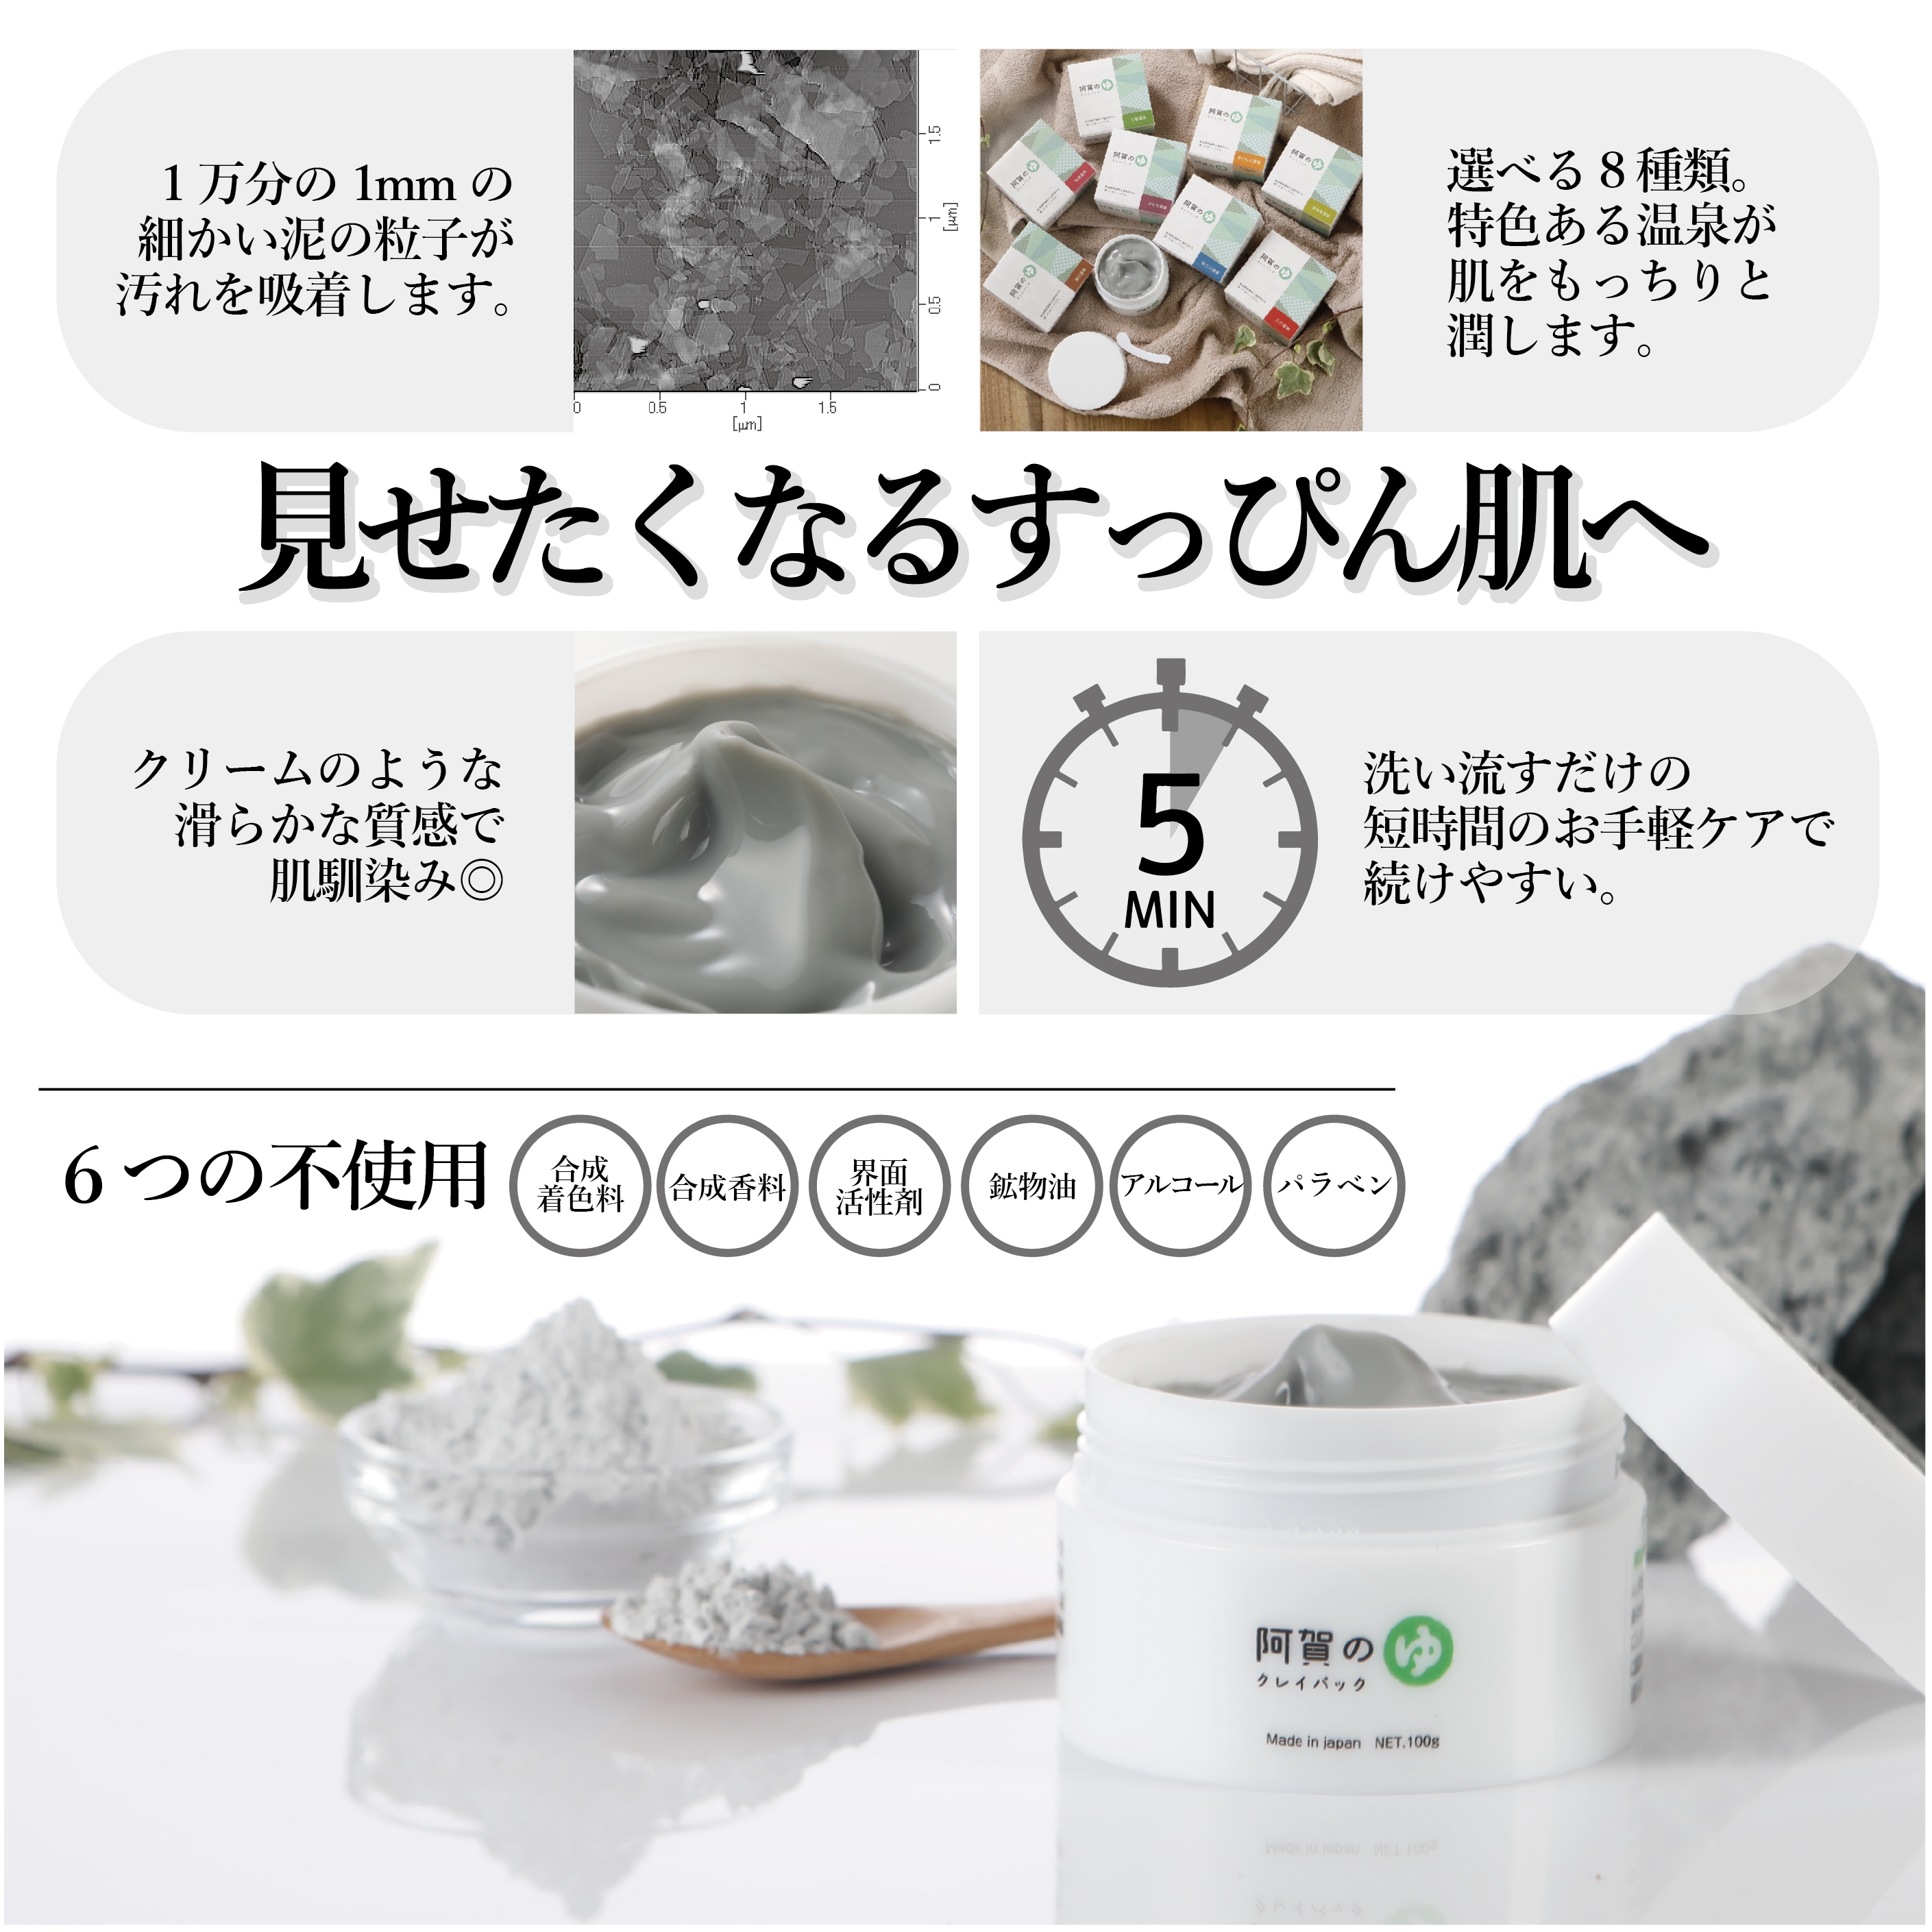 Kanben Cosmetics(カンベンコスメティックス) 阿賀のゆ クレイパックの商品画像3 